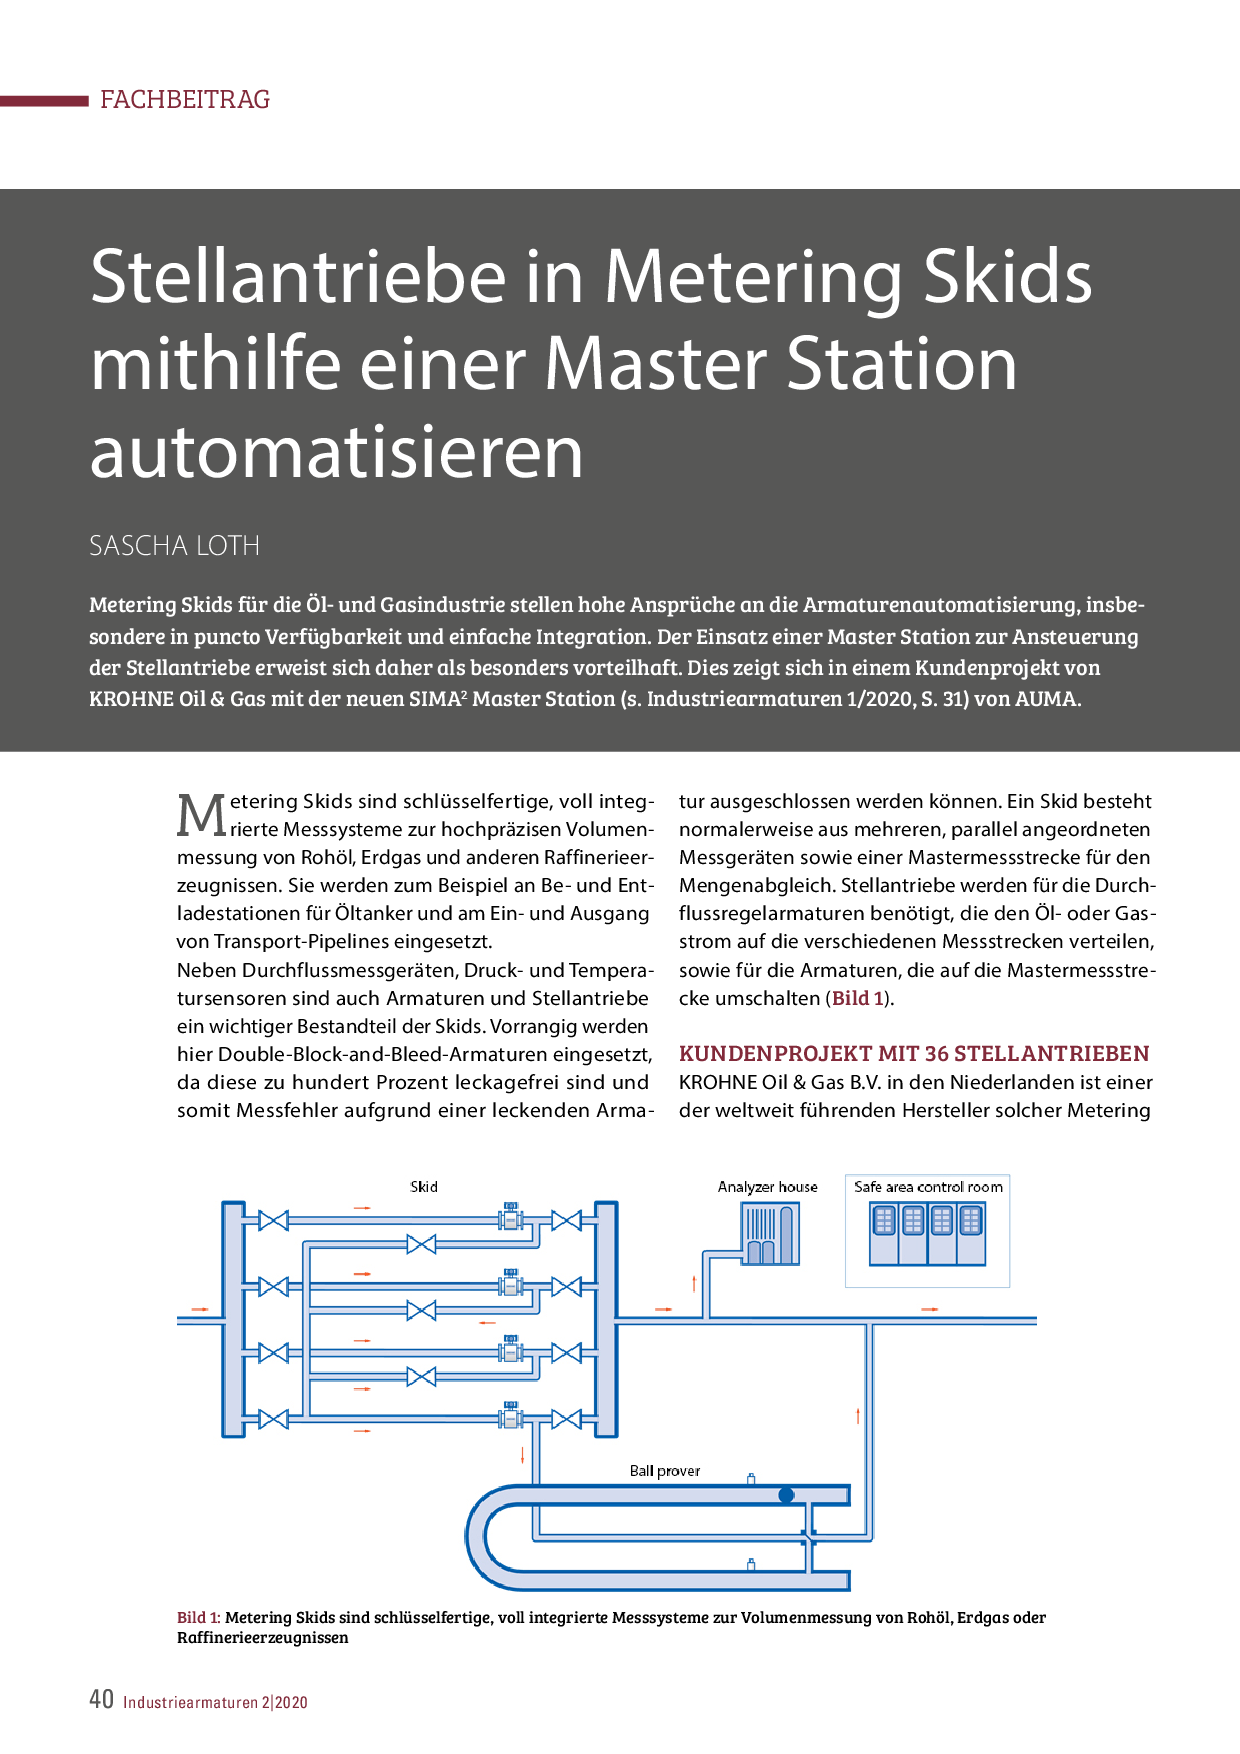 Stellantriebe in Metering Skids mithilfe einer Master Station automatisieren